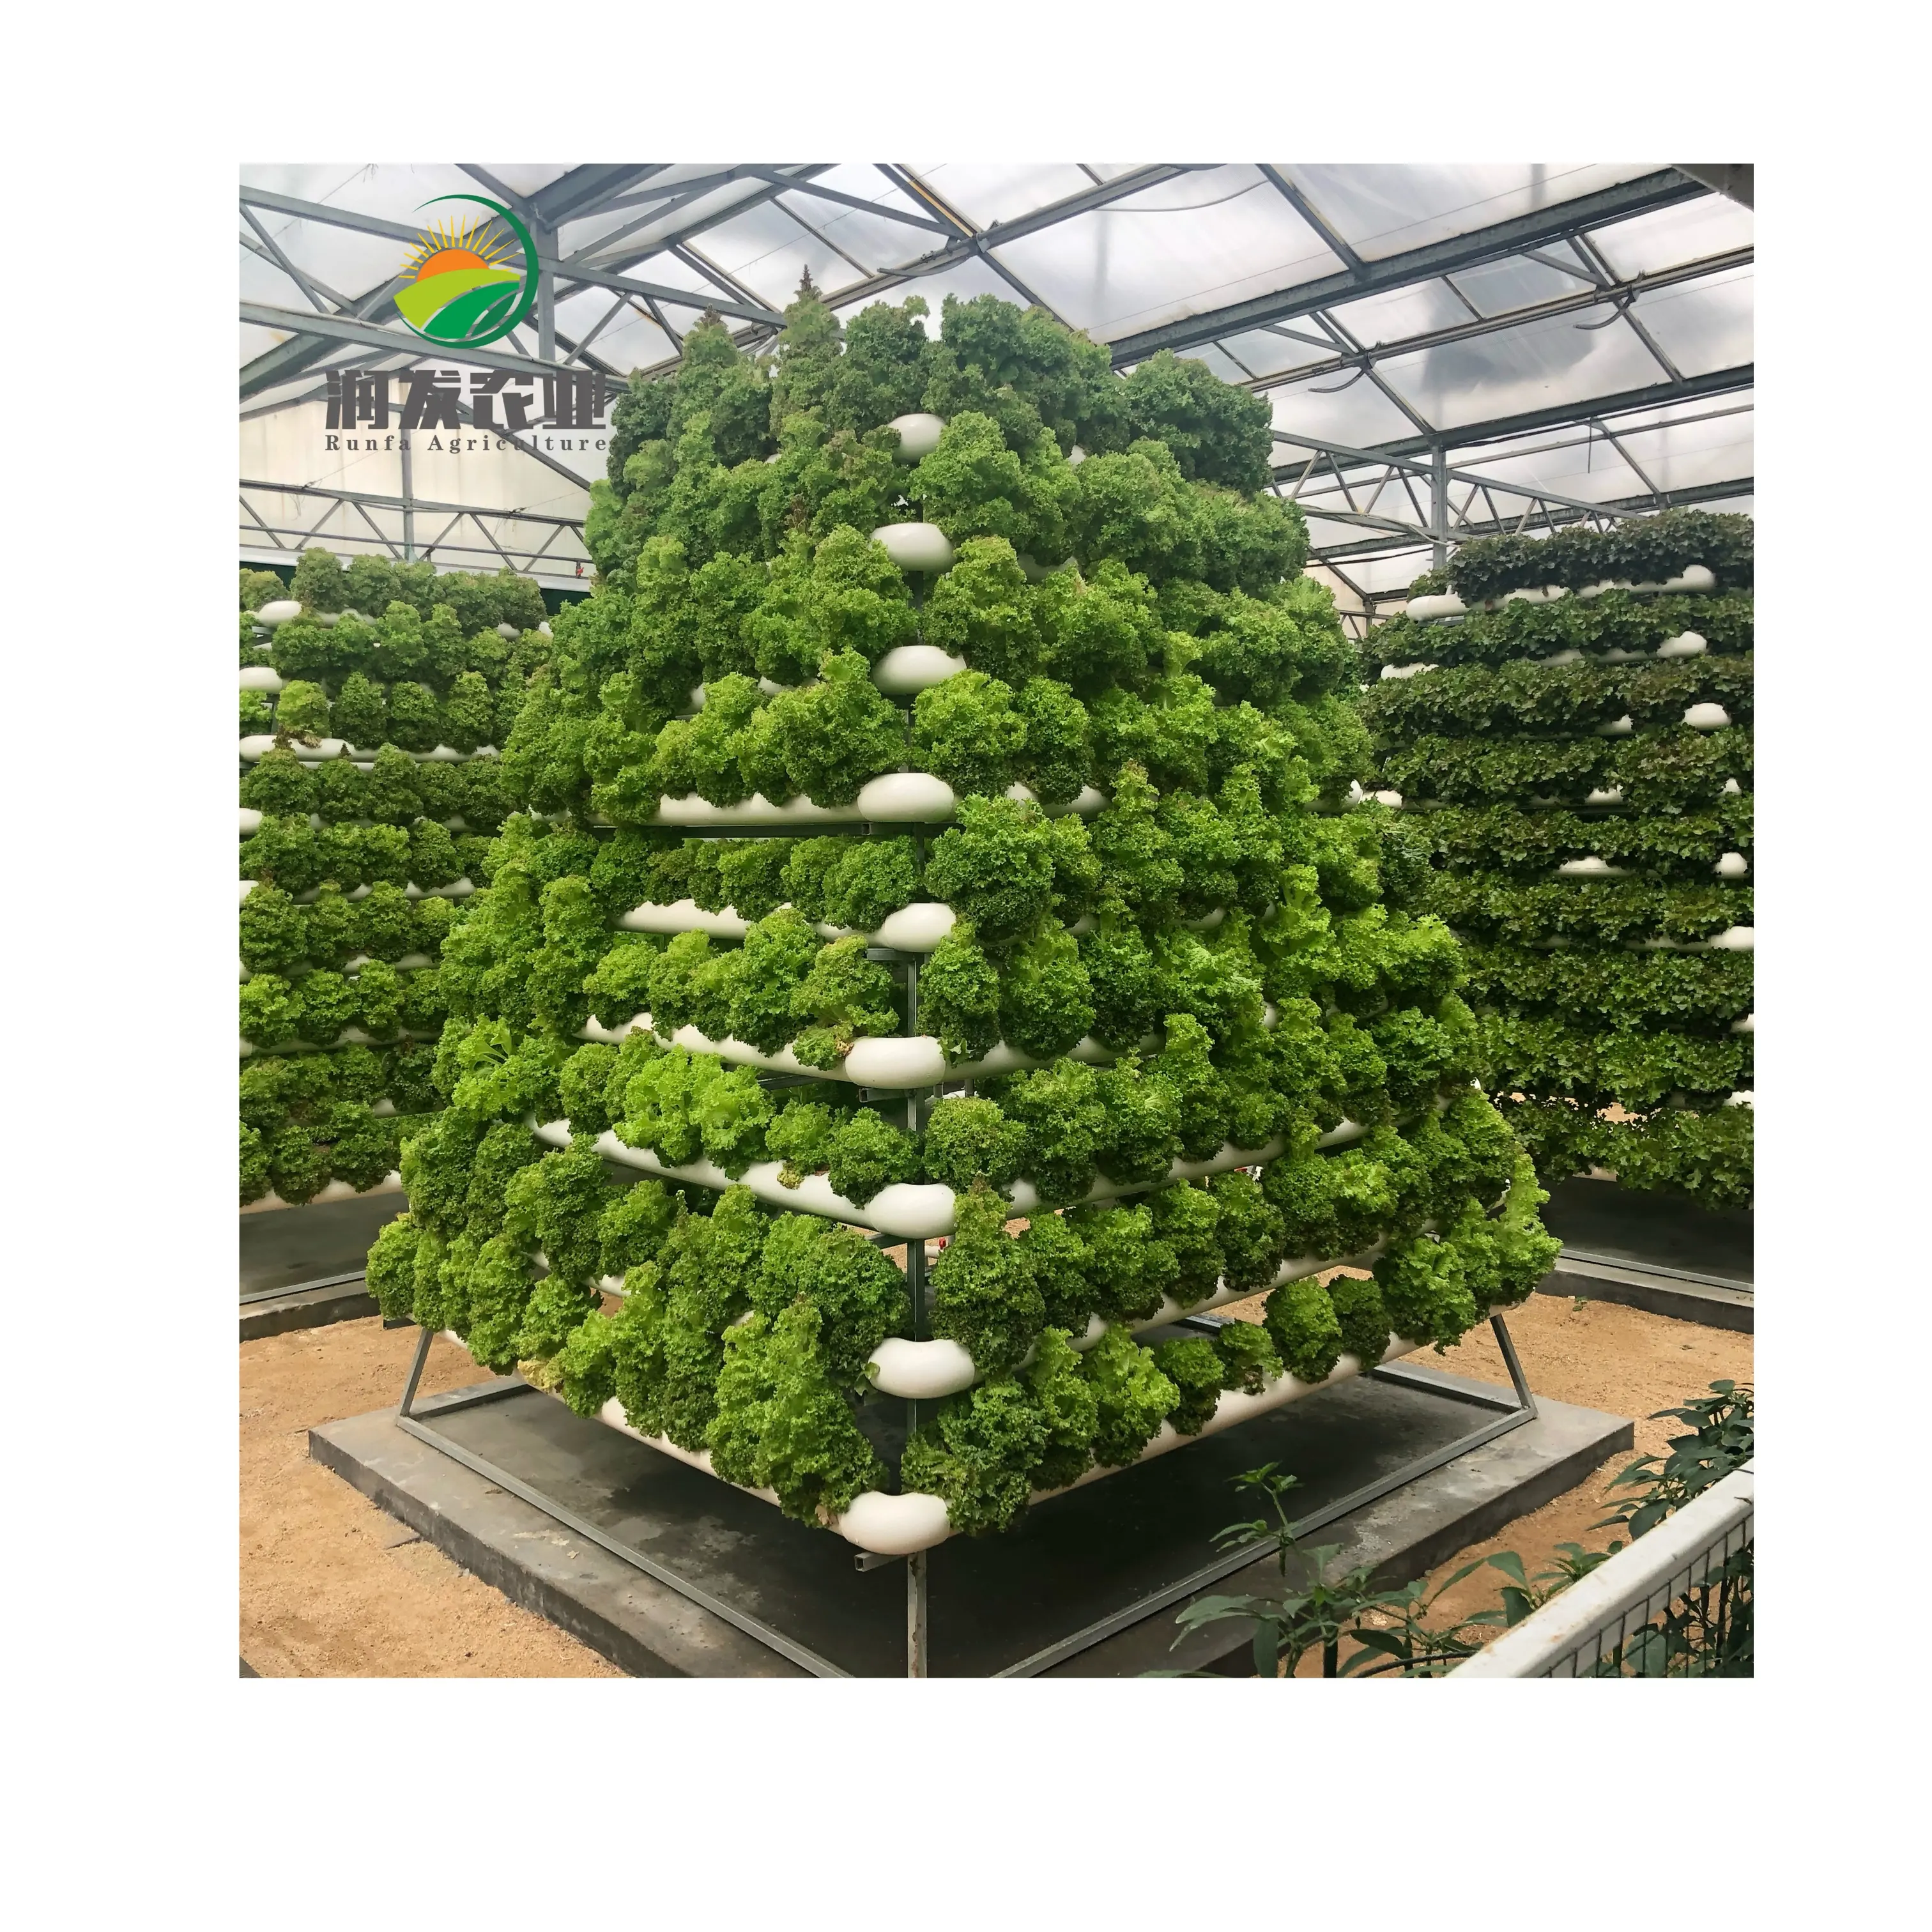 ระบบปลูกพืชไฮโดรโปนิกส์ในสวนขนาดใหญ่,ระบบปลูกพืชไฮโดรโปนิกส์แบบ16 Pot Rdwc Co2สำหรับใช้ในบ้านหลังบ้าน